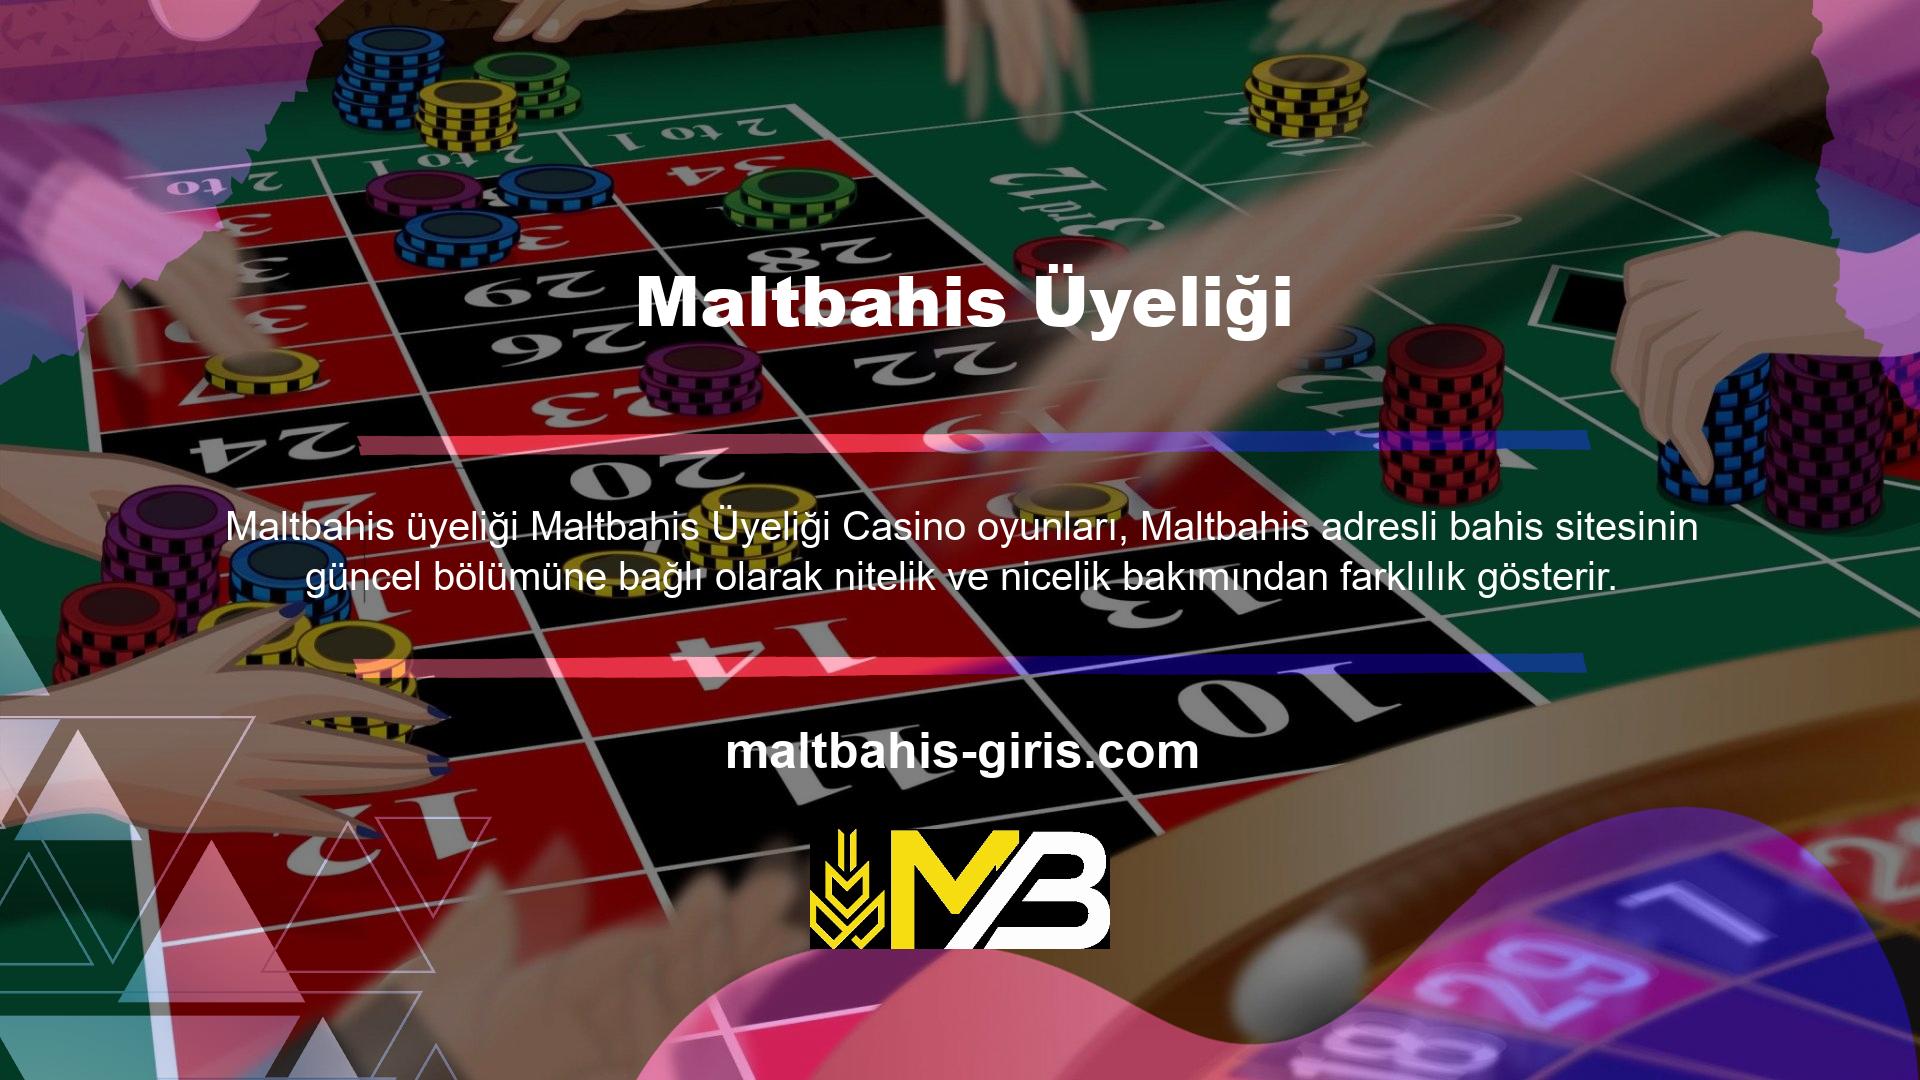 Maltbahis hizmetleri sunan birçok yerel Maltbahis oyuncusu iyi bilinmektedir